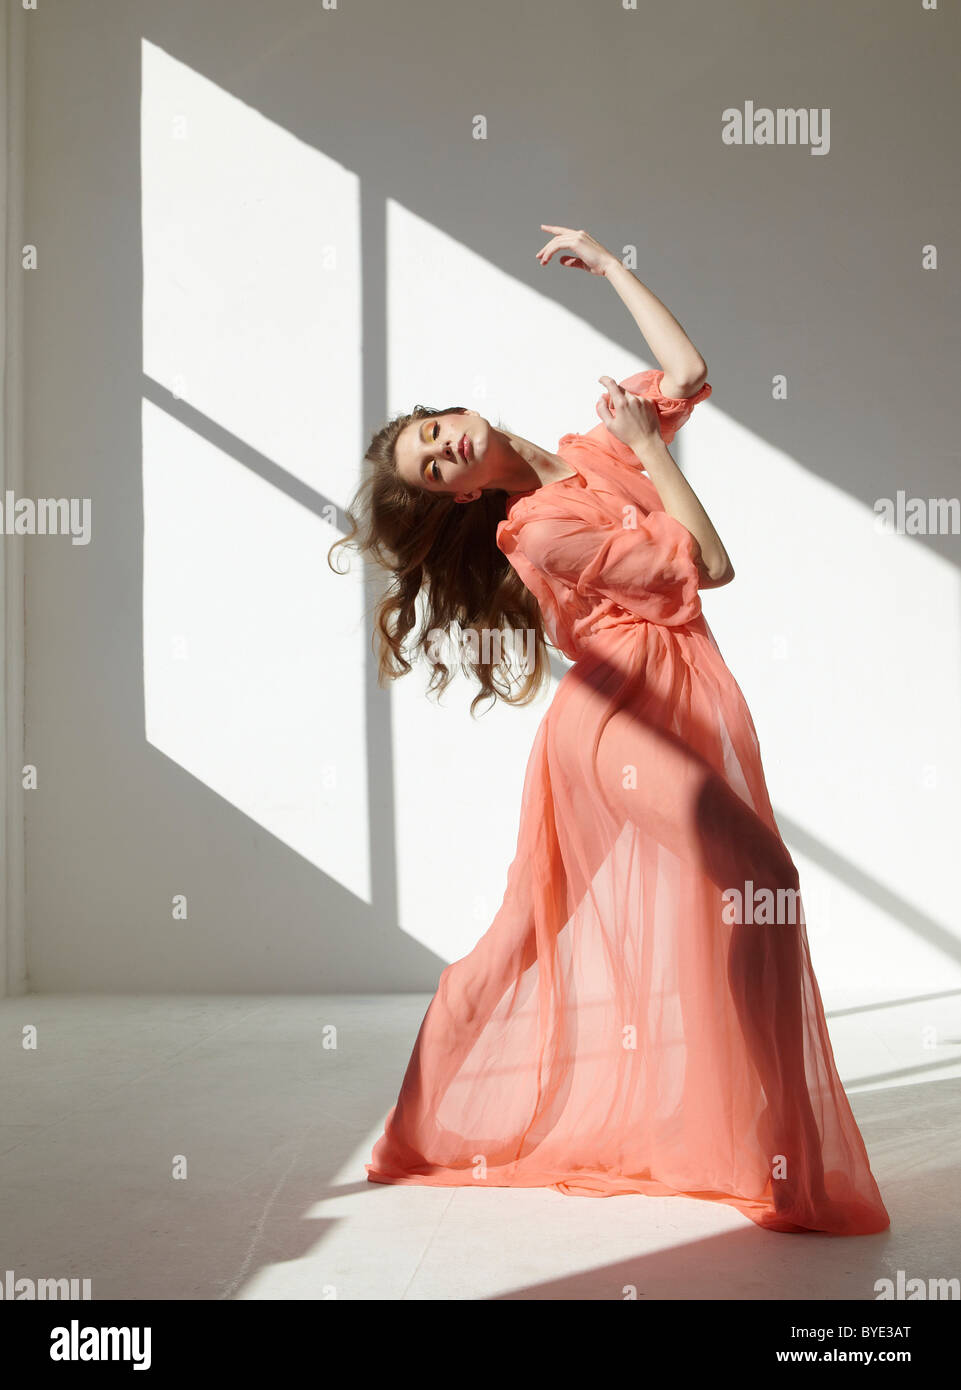 Danseur de Ballet portant une robe rouge dans une danse posent Banque D'Images